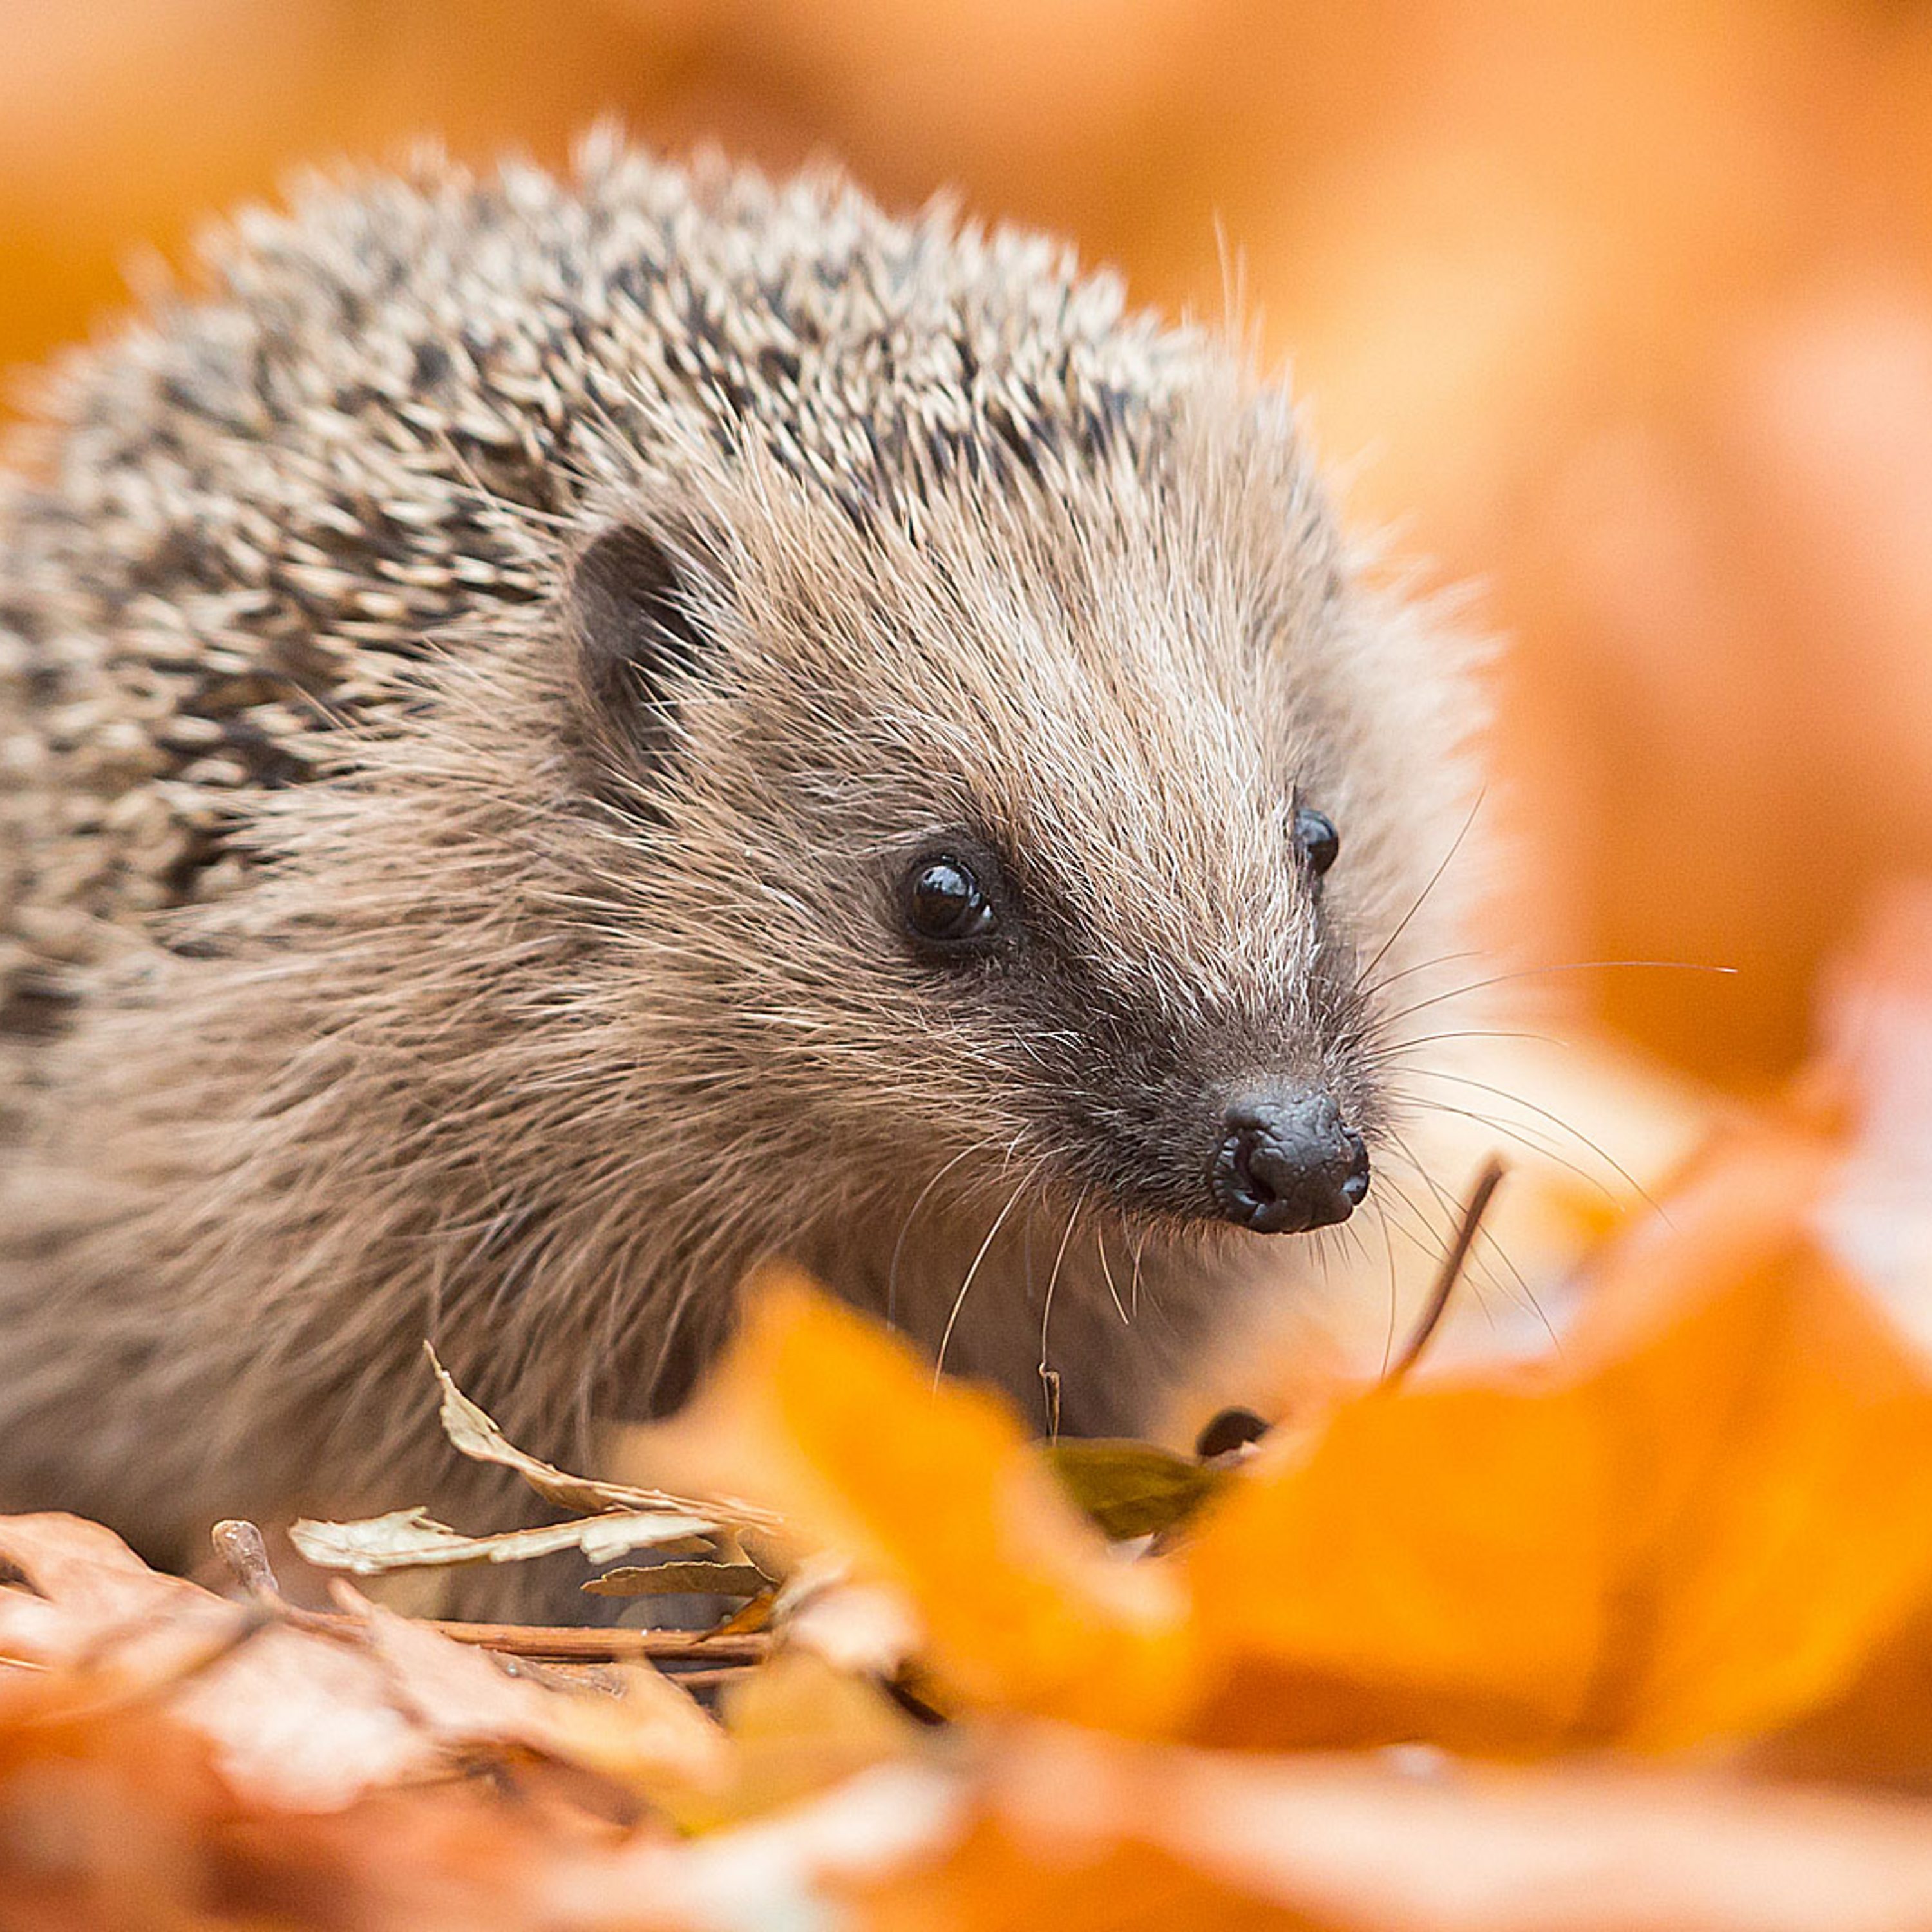 How Do You Stop a Hedgehog Invasion?